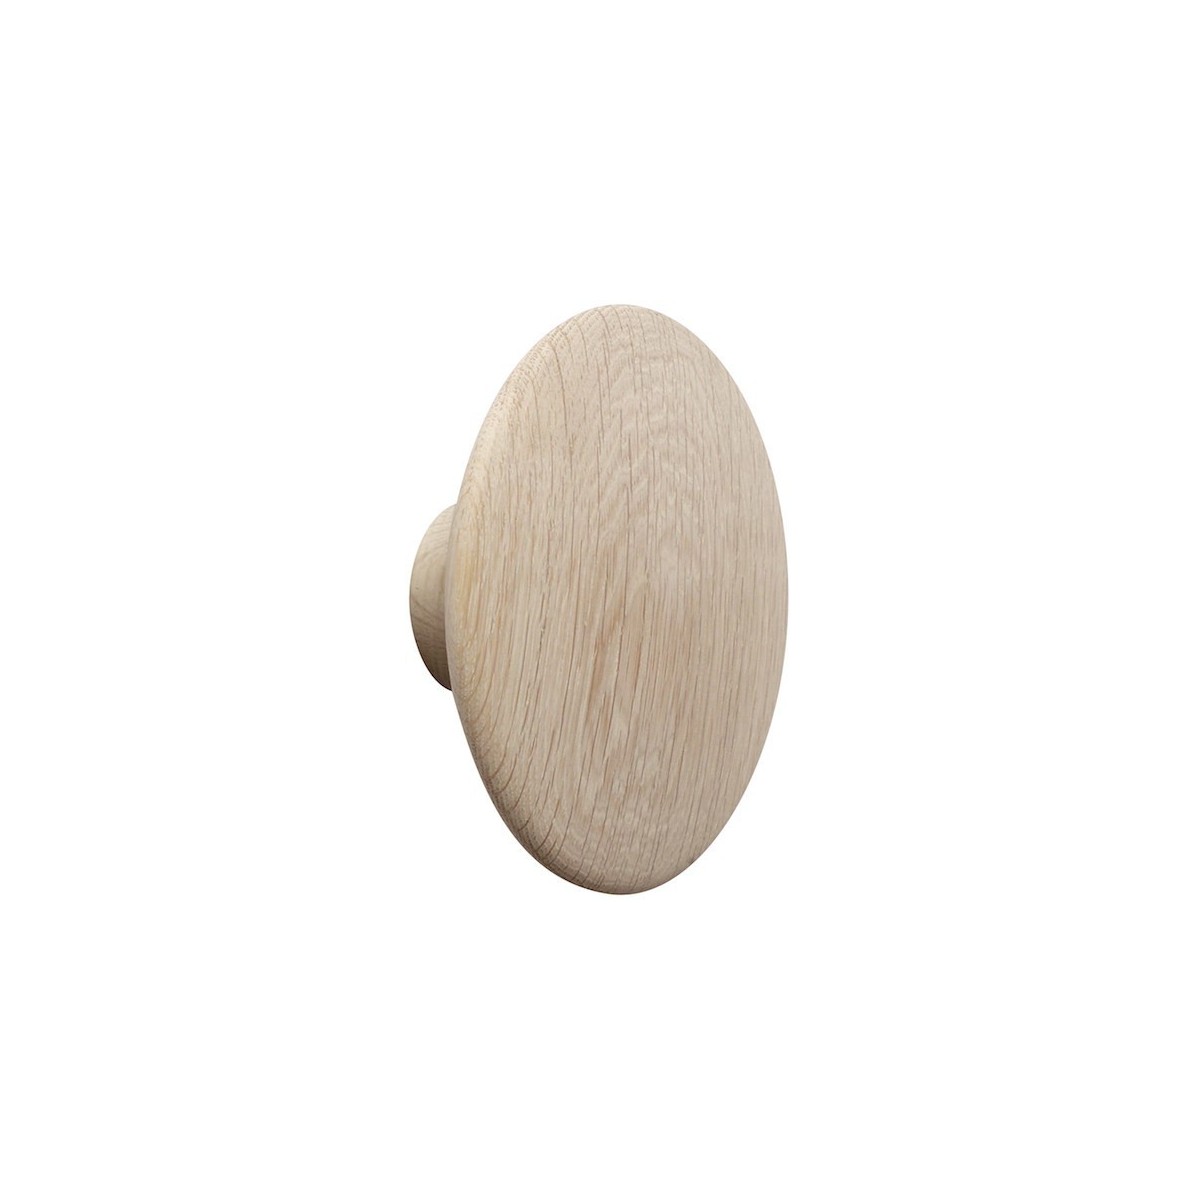 Ø17 cm (L) - oak - The Dots wood